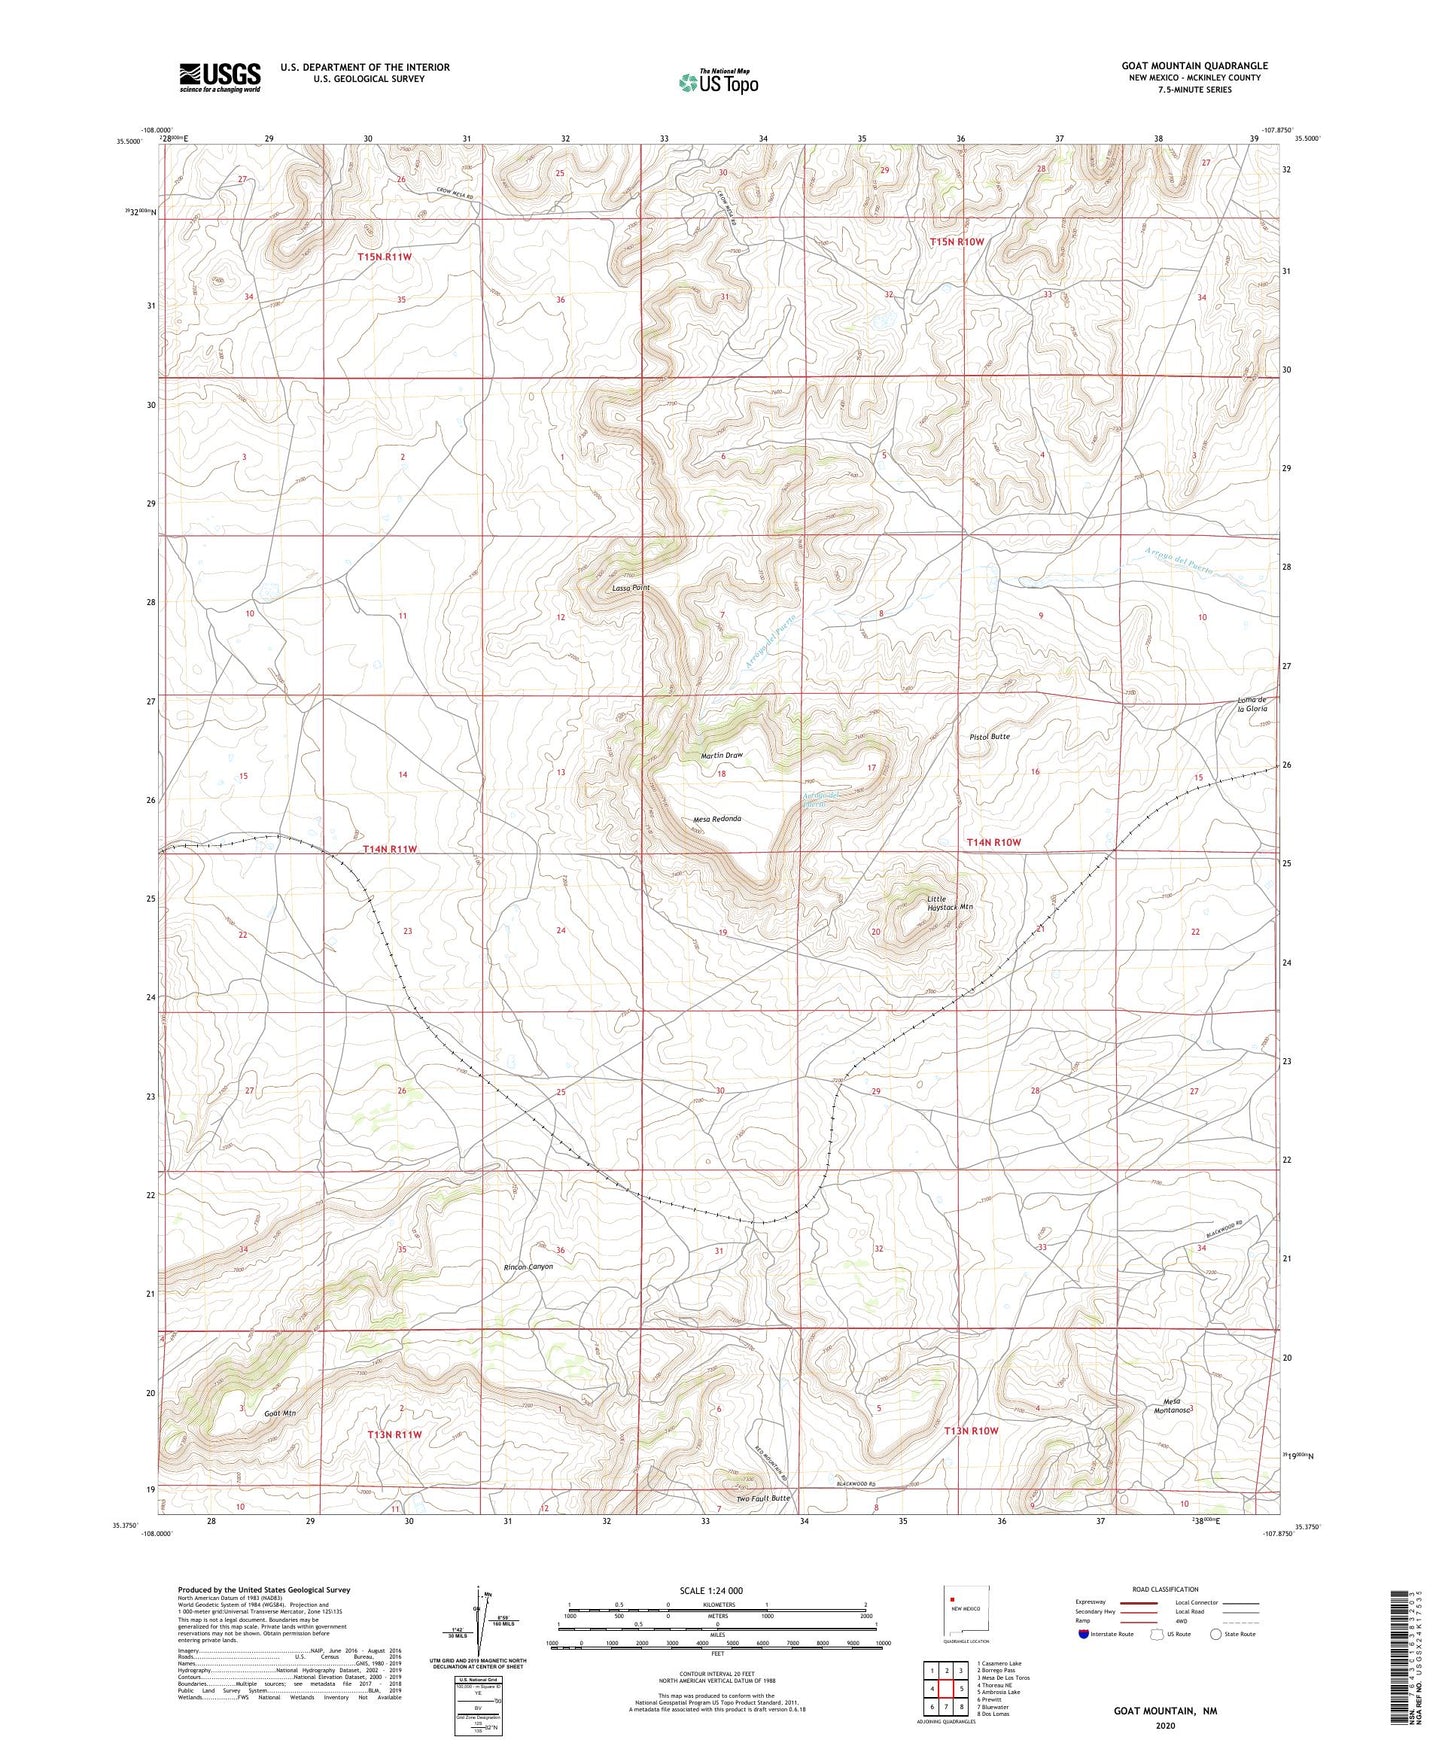 Goat Mountain New Mexico US Topo Map Image